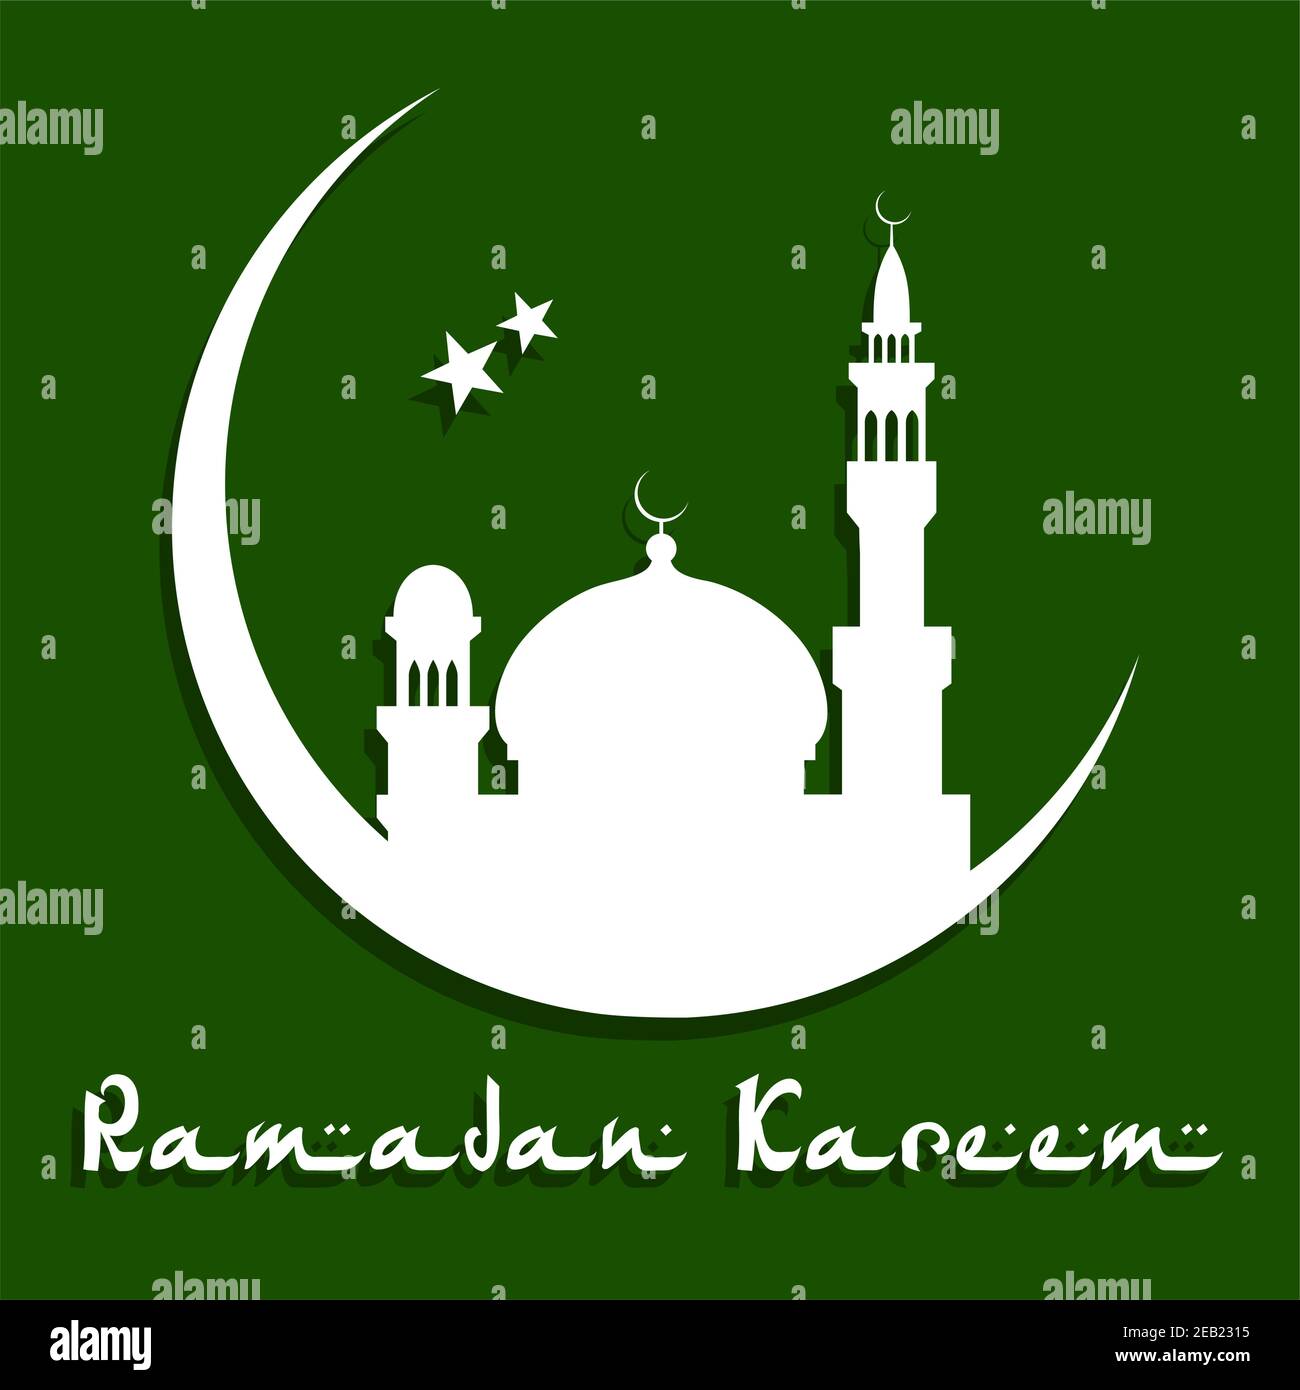 Đền thờ với bánh trăng và ngôi sao màu trắng trên nền xanh đậm - Ramadan: Một khung cảnh đầy cảm hứng và tâm linh, tạo nên bởi bức tranh màu sắc thể hiện văn hóa Ramadan đặc trưng. Đừng bỏ qua cơ hội tìm hiểu thêm về hình ảnh này!